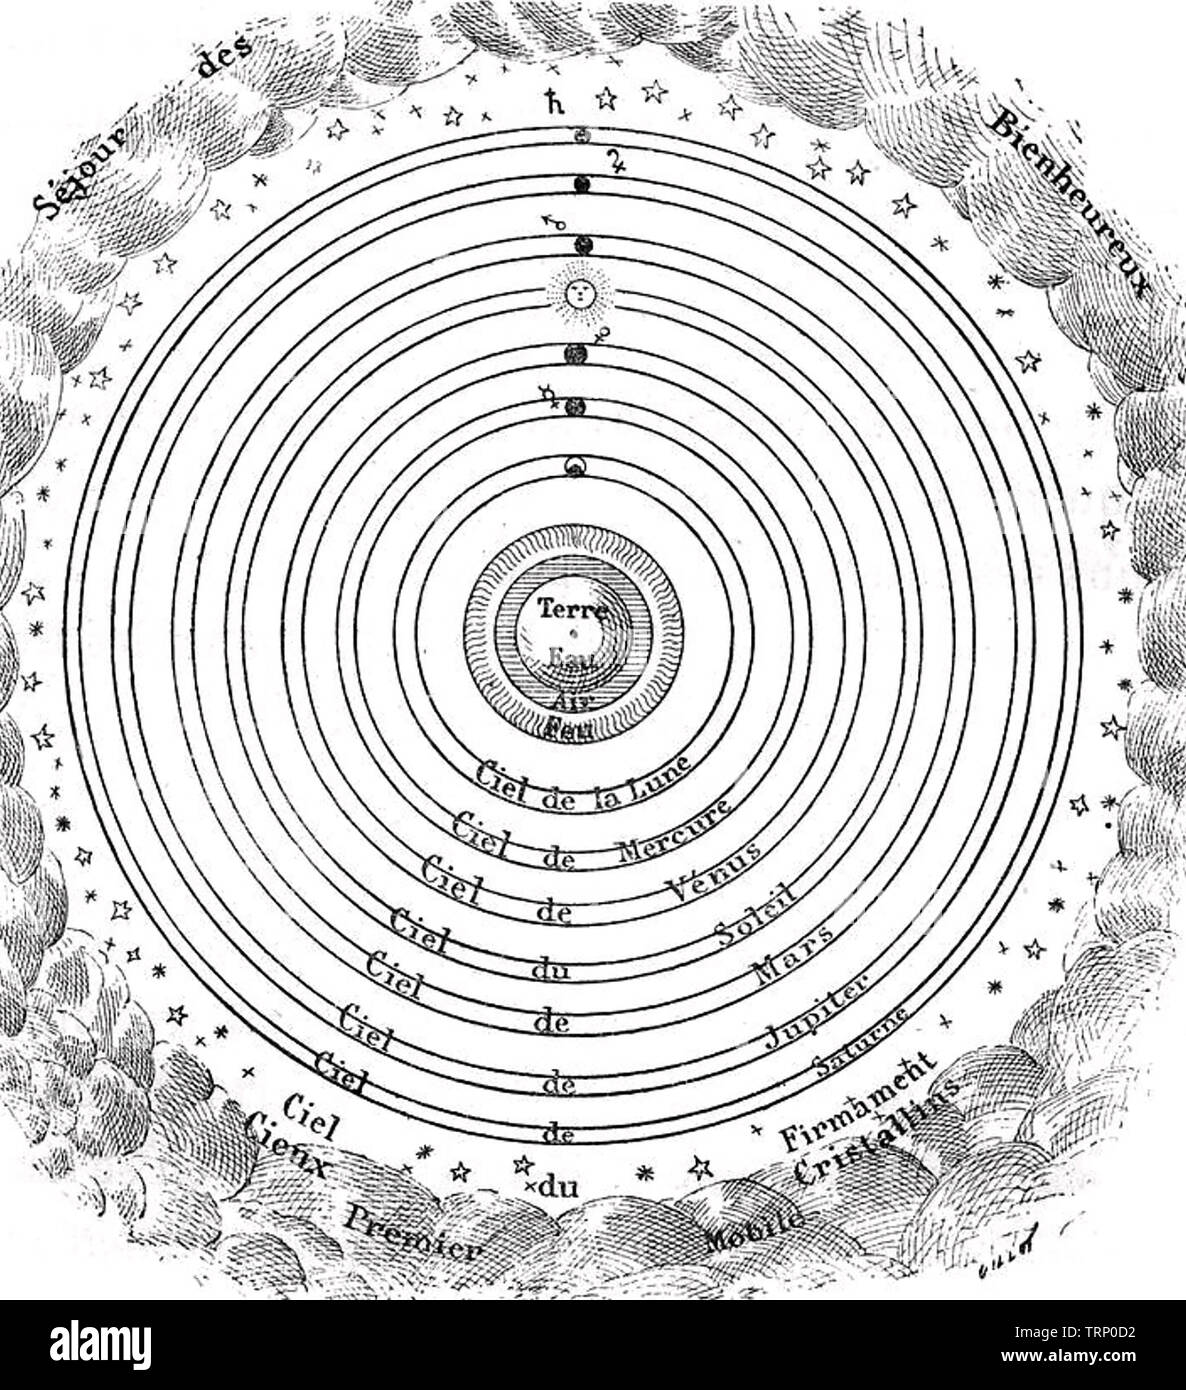 Ptolémée (c 100-c 170 AD) mathématicien et astronome gréco-romaine. Schéma français de son idée géocentrique du système solaire Banque D'Images